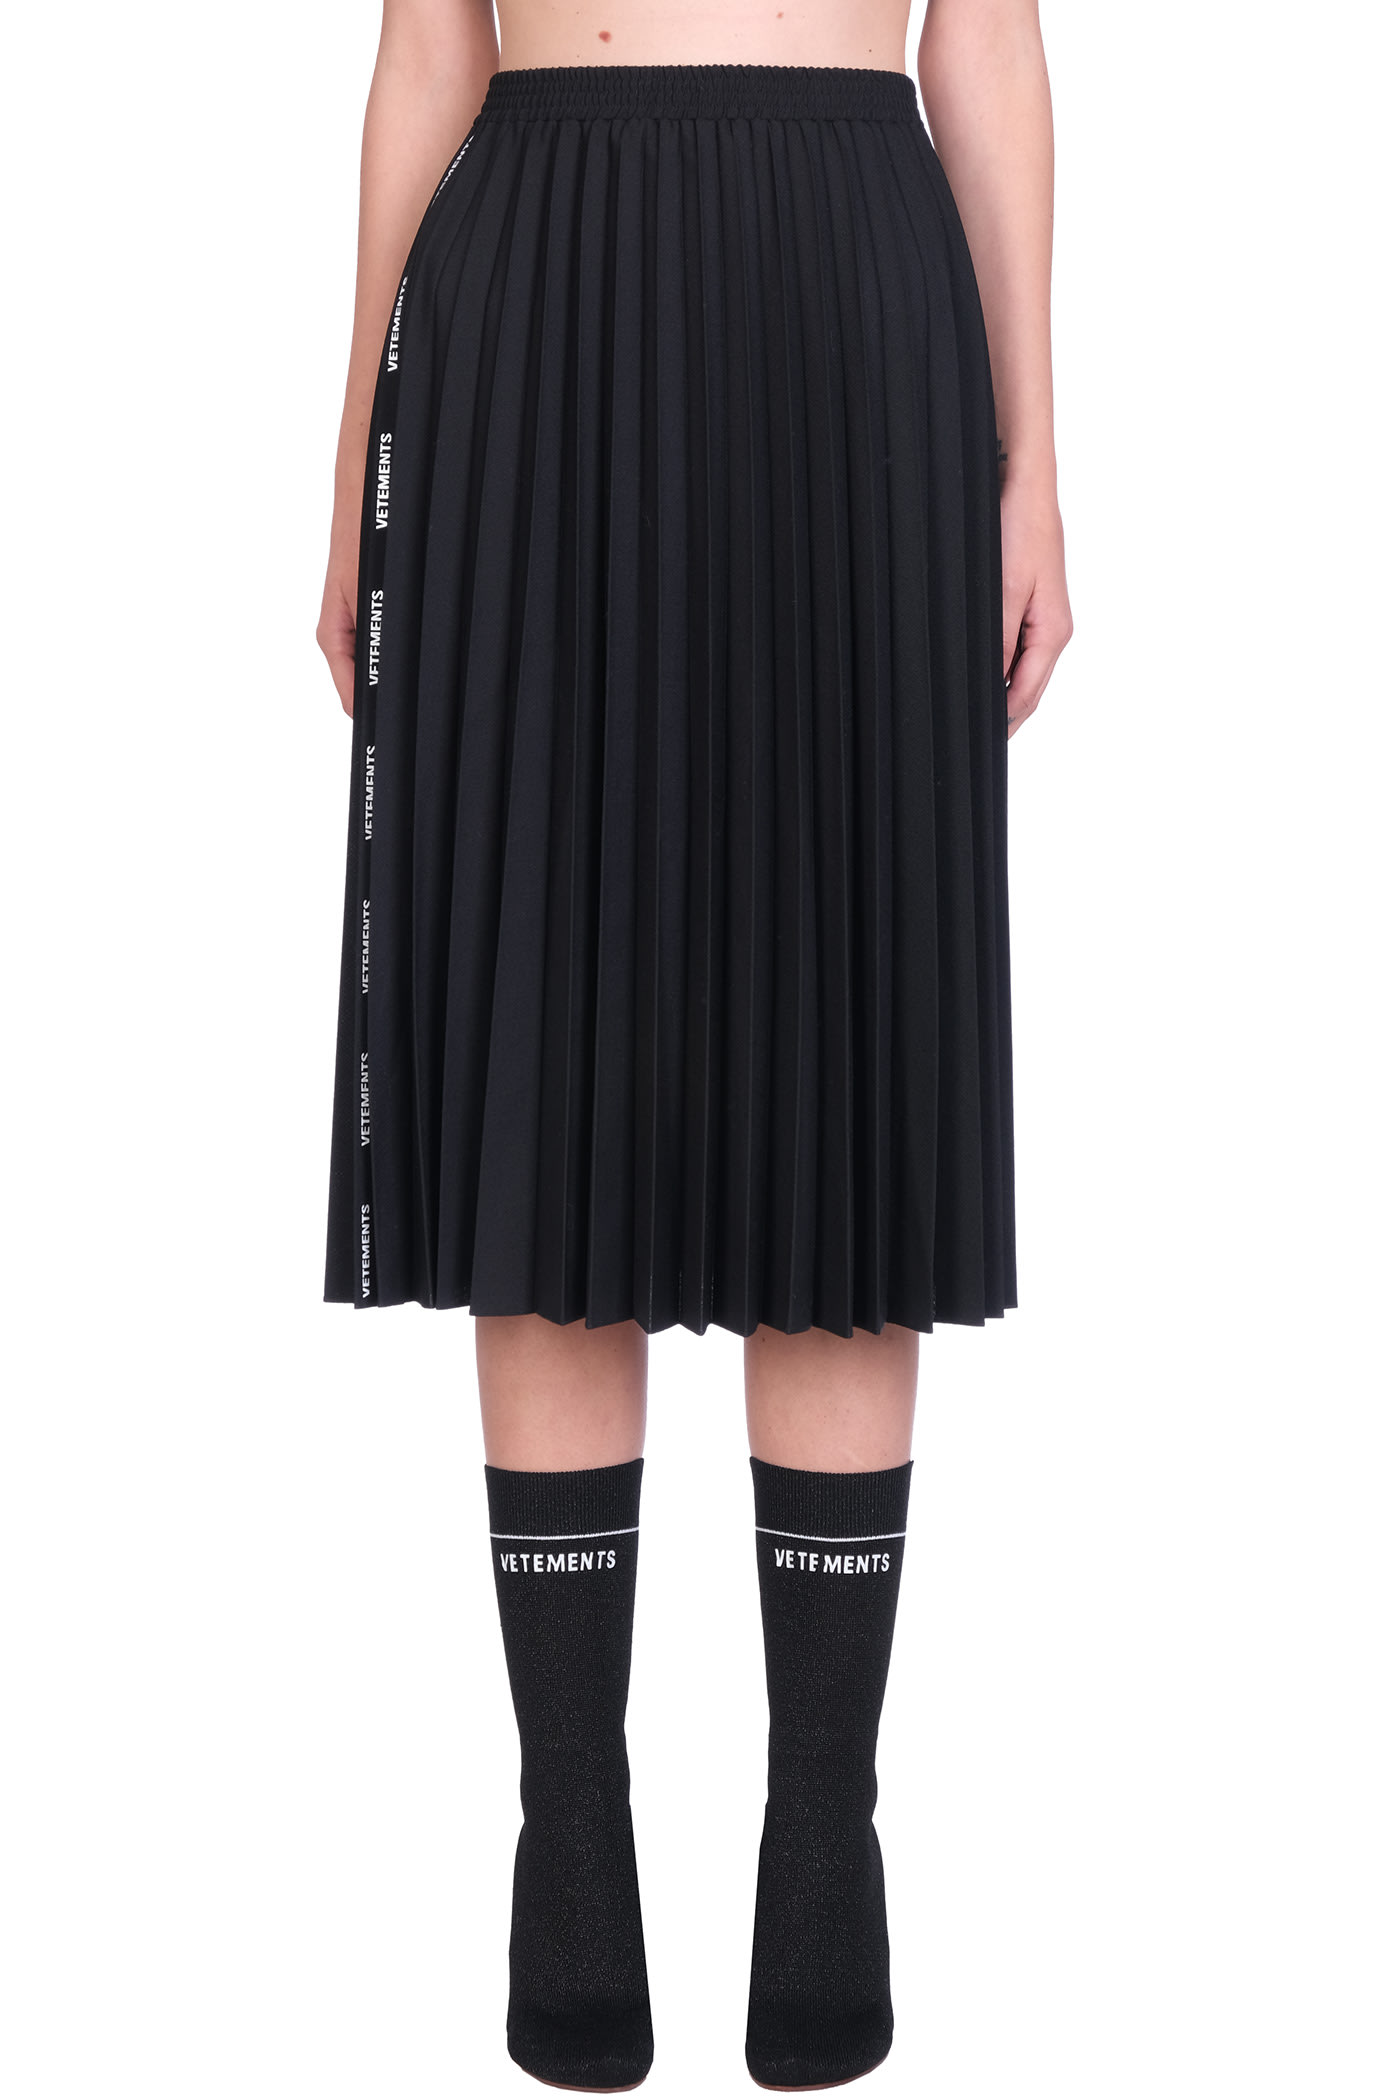 VETEMENTS Skirt In Black Polyester